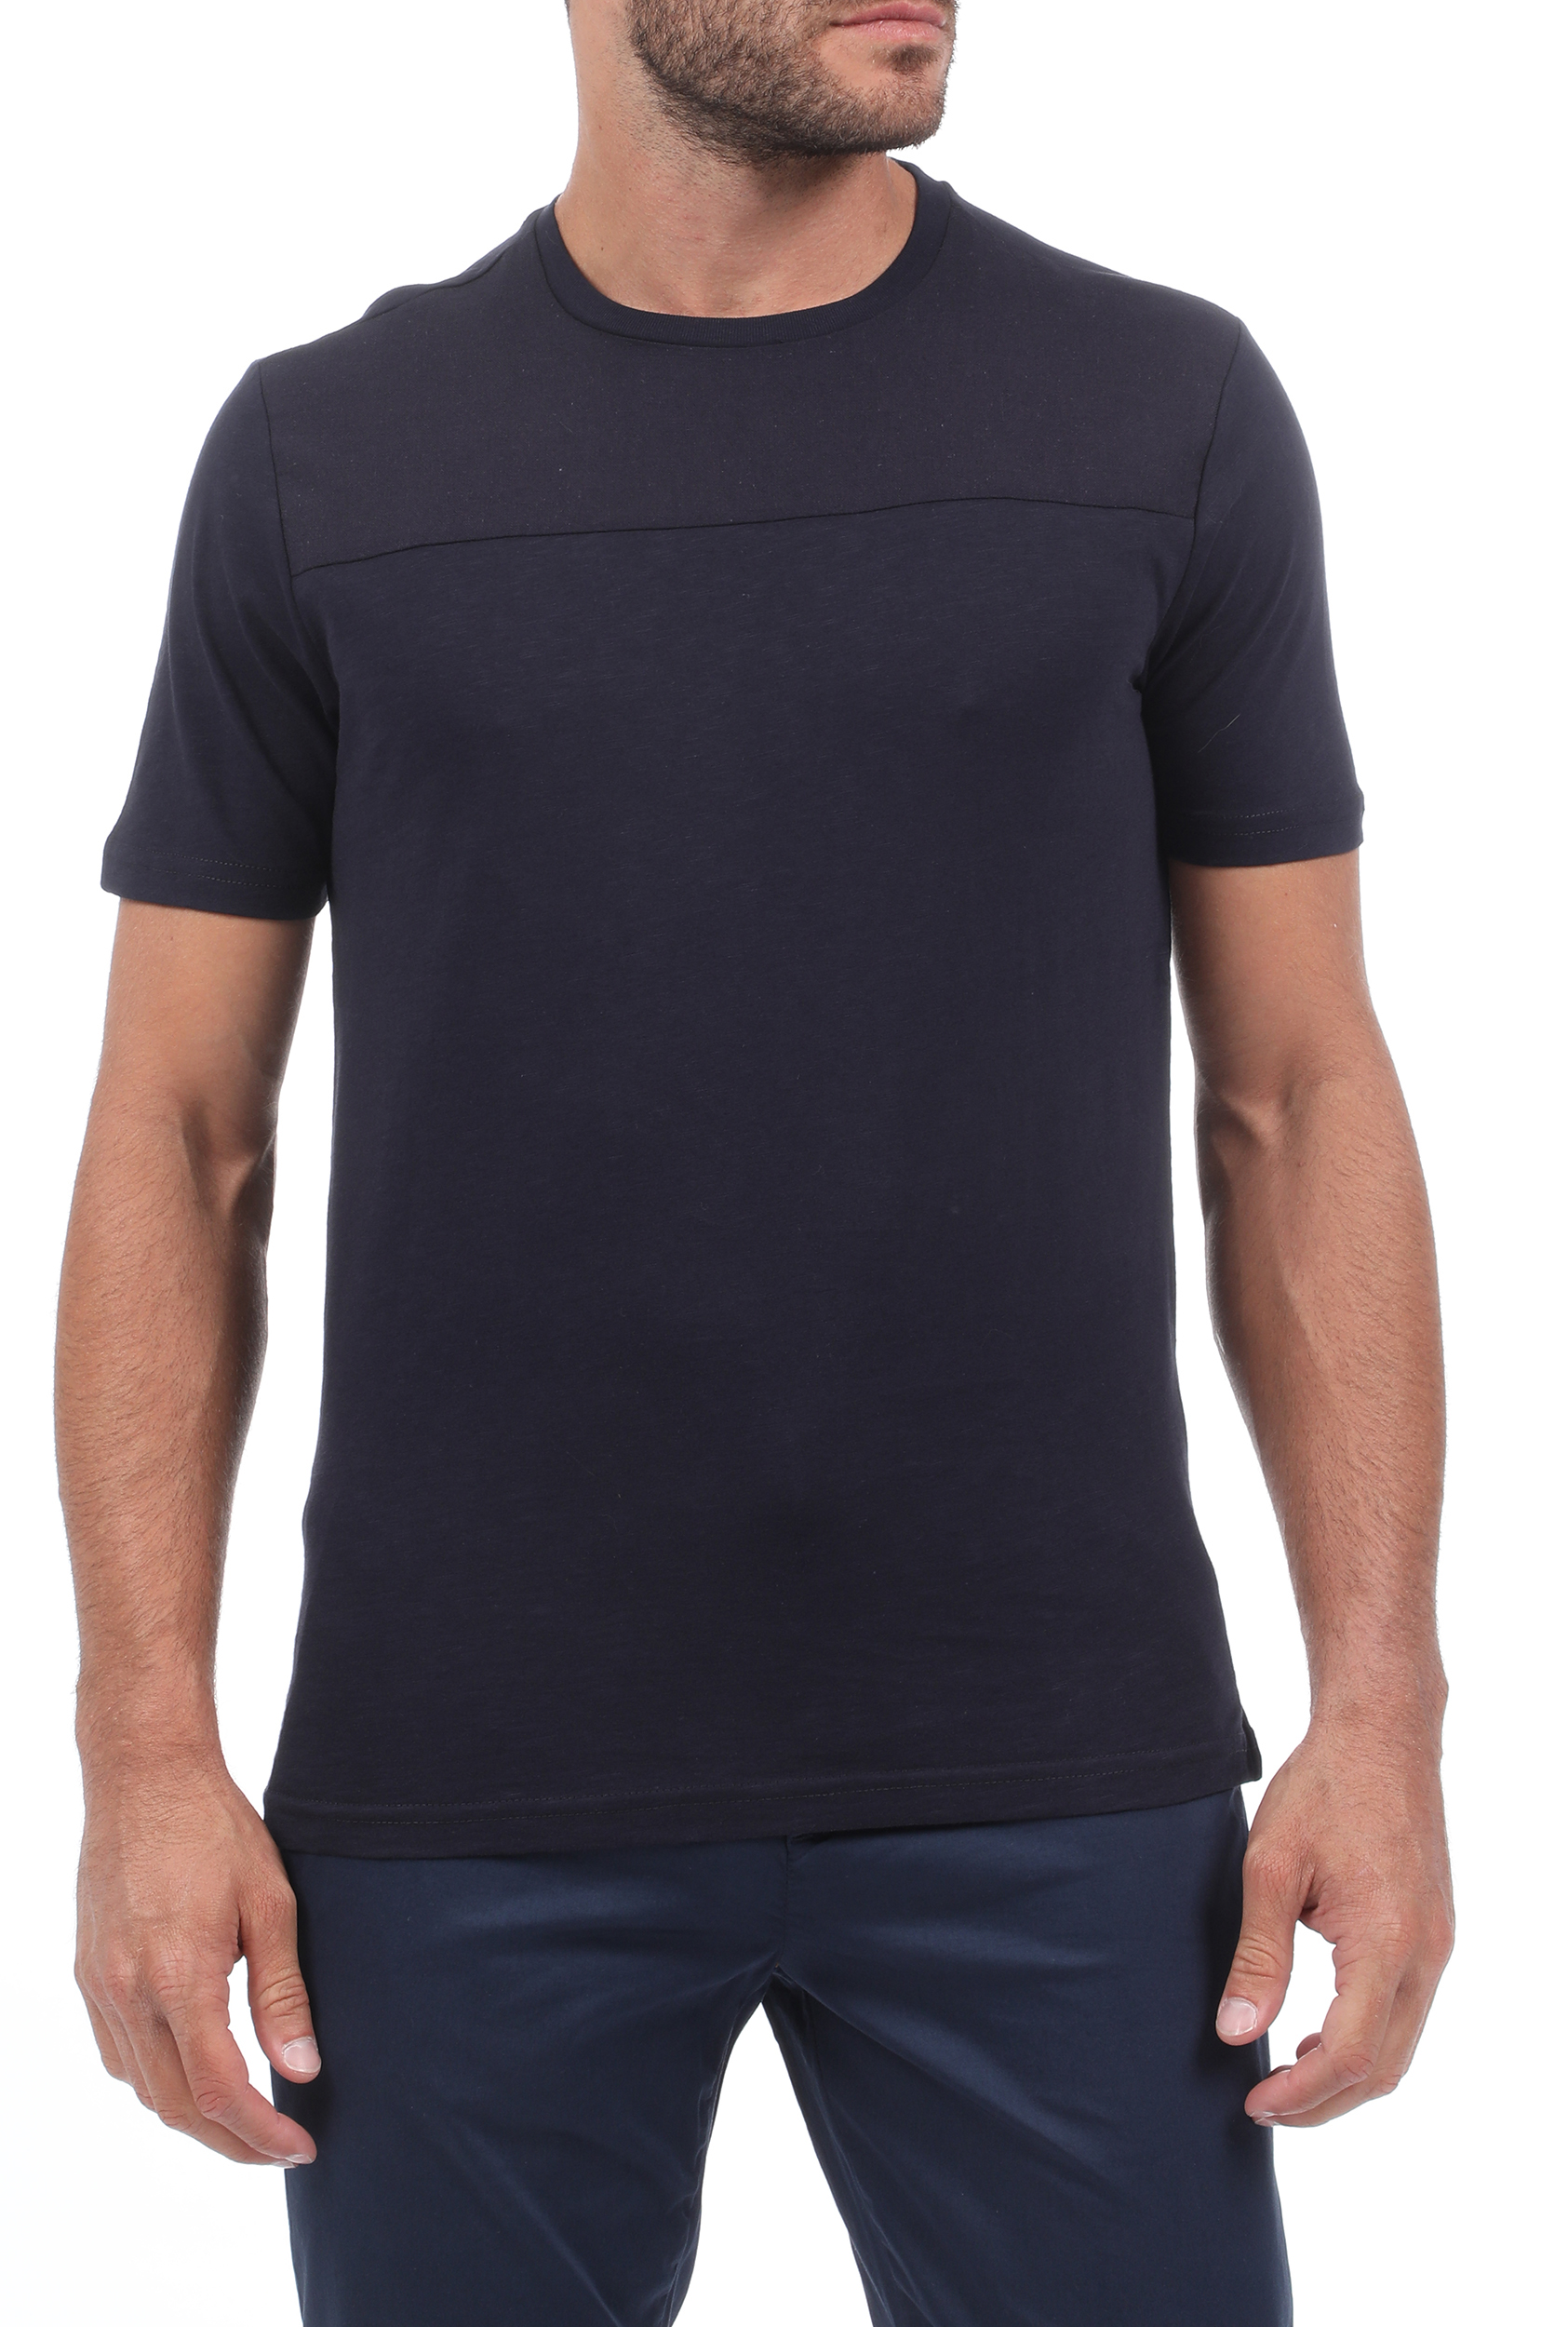 Ανδρικά/Ρούχα/Μπλούζες/Κοντομάνικες SSEINSE - Ανδρικό t-shirt SSEINSE μπλε